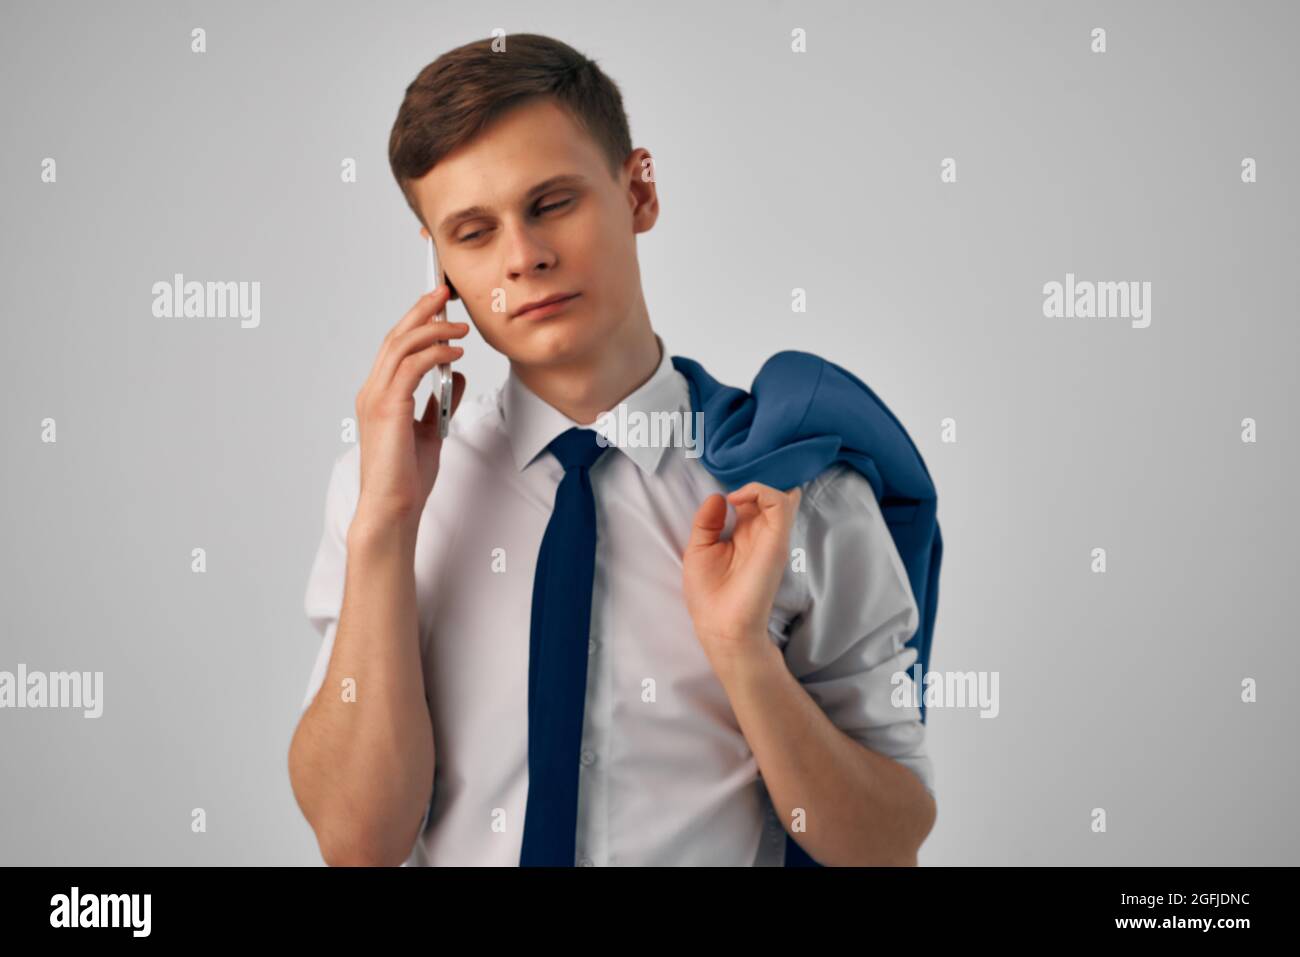 Business-Mann im Hemd mit Krawatte reden am Telefon professionelle Arbeit  Stockfotografie - Alamy